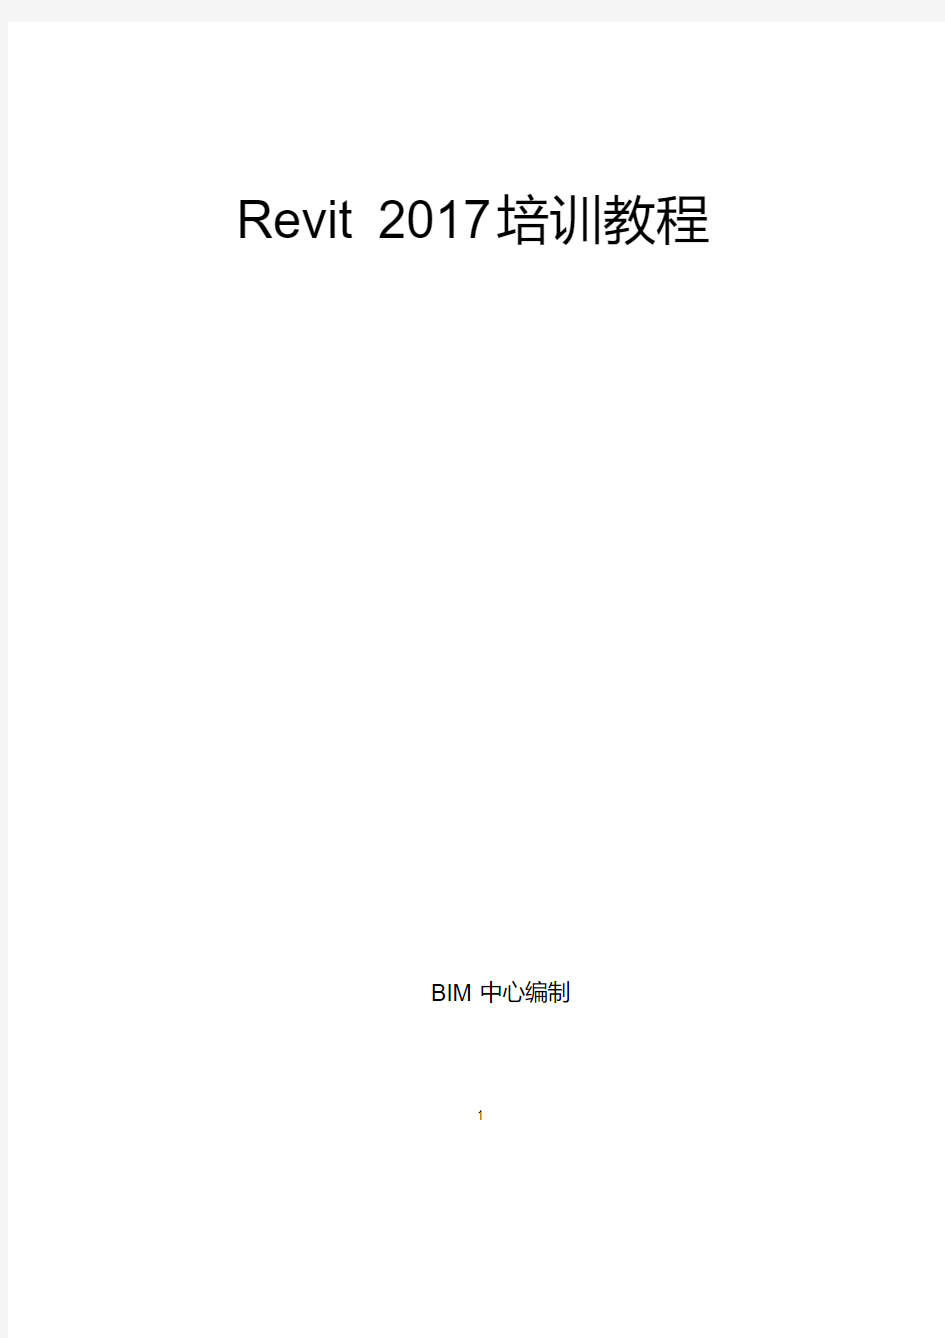 完整版Revit2017教程